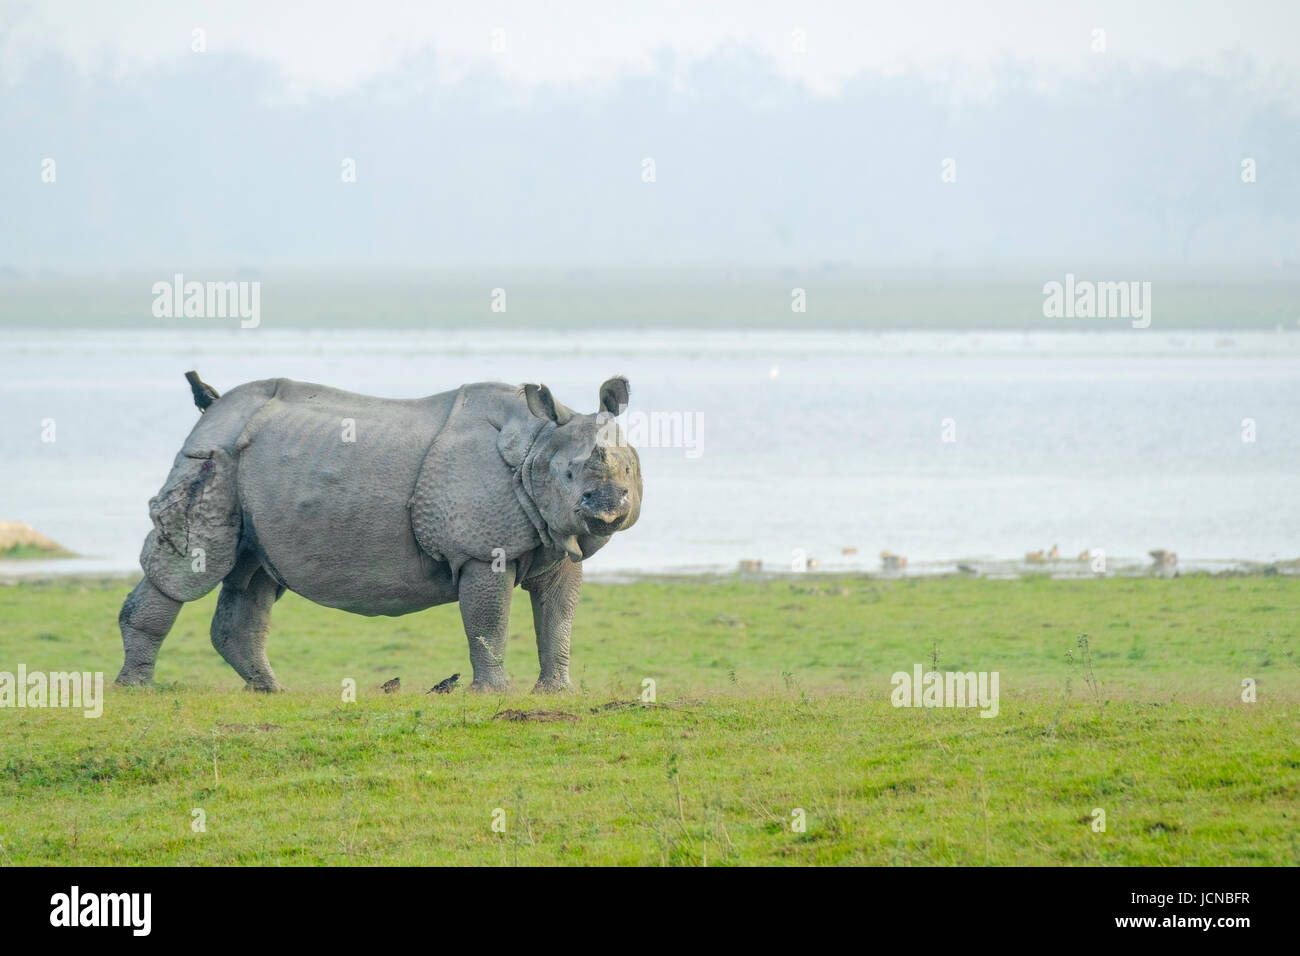 Rhinocéros indien (Rhinoceros unicornis) en face de la rivière.Parc national de Kaziranga, Assam, Inde Banque D'Images